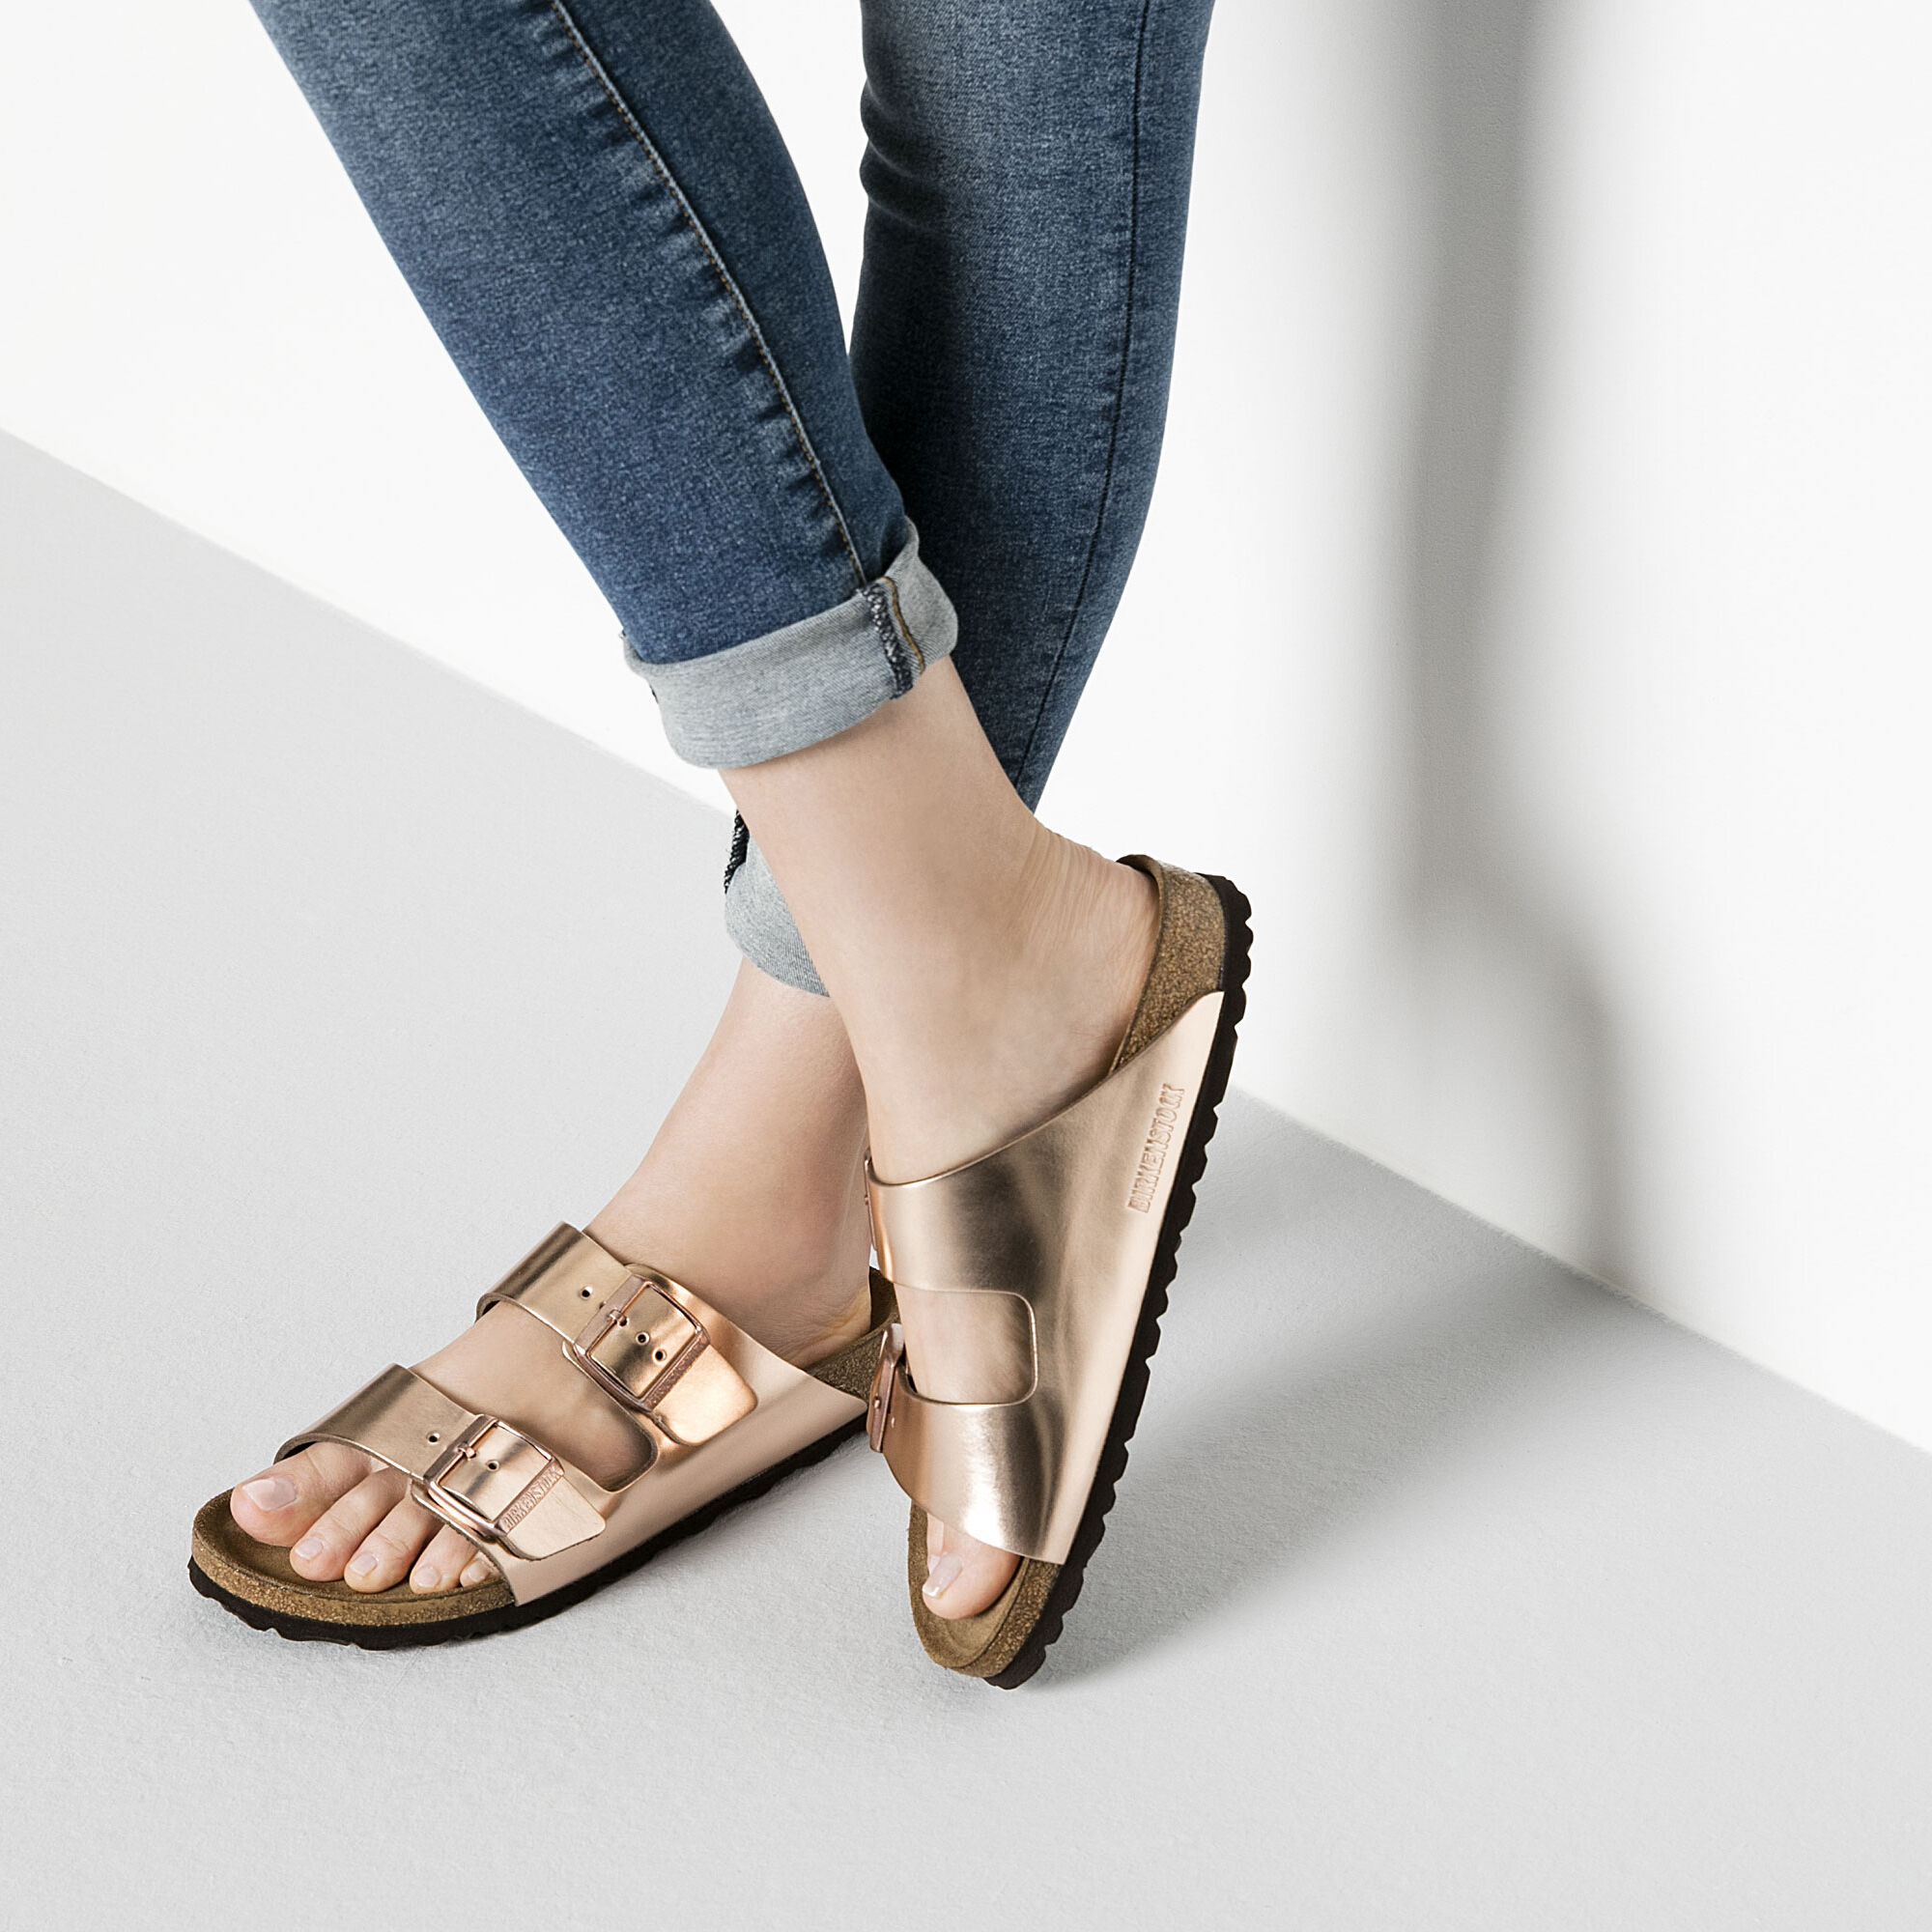 birkenstock women's metallic copper arizona sandals